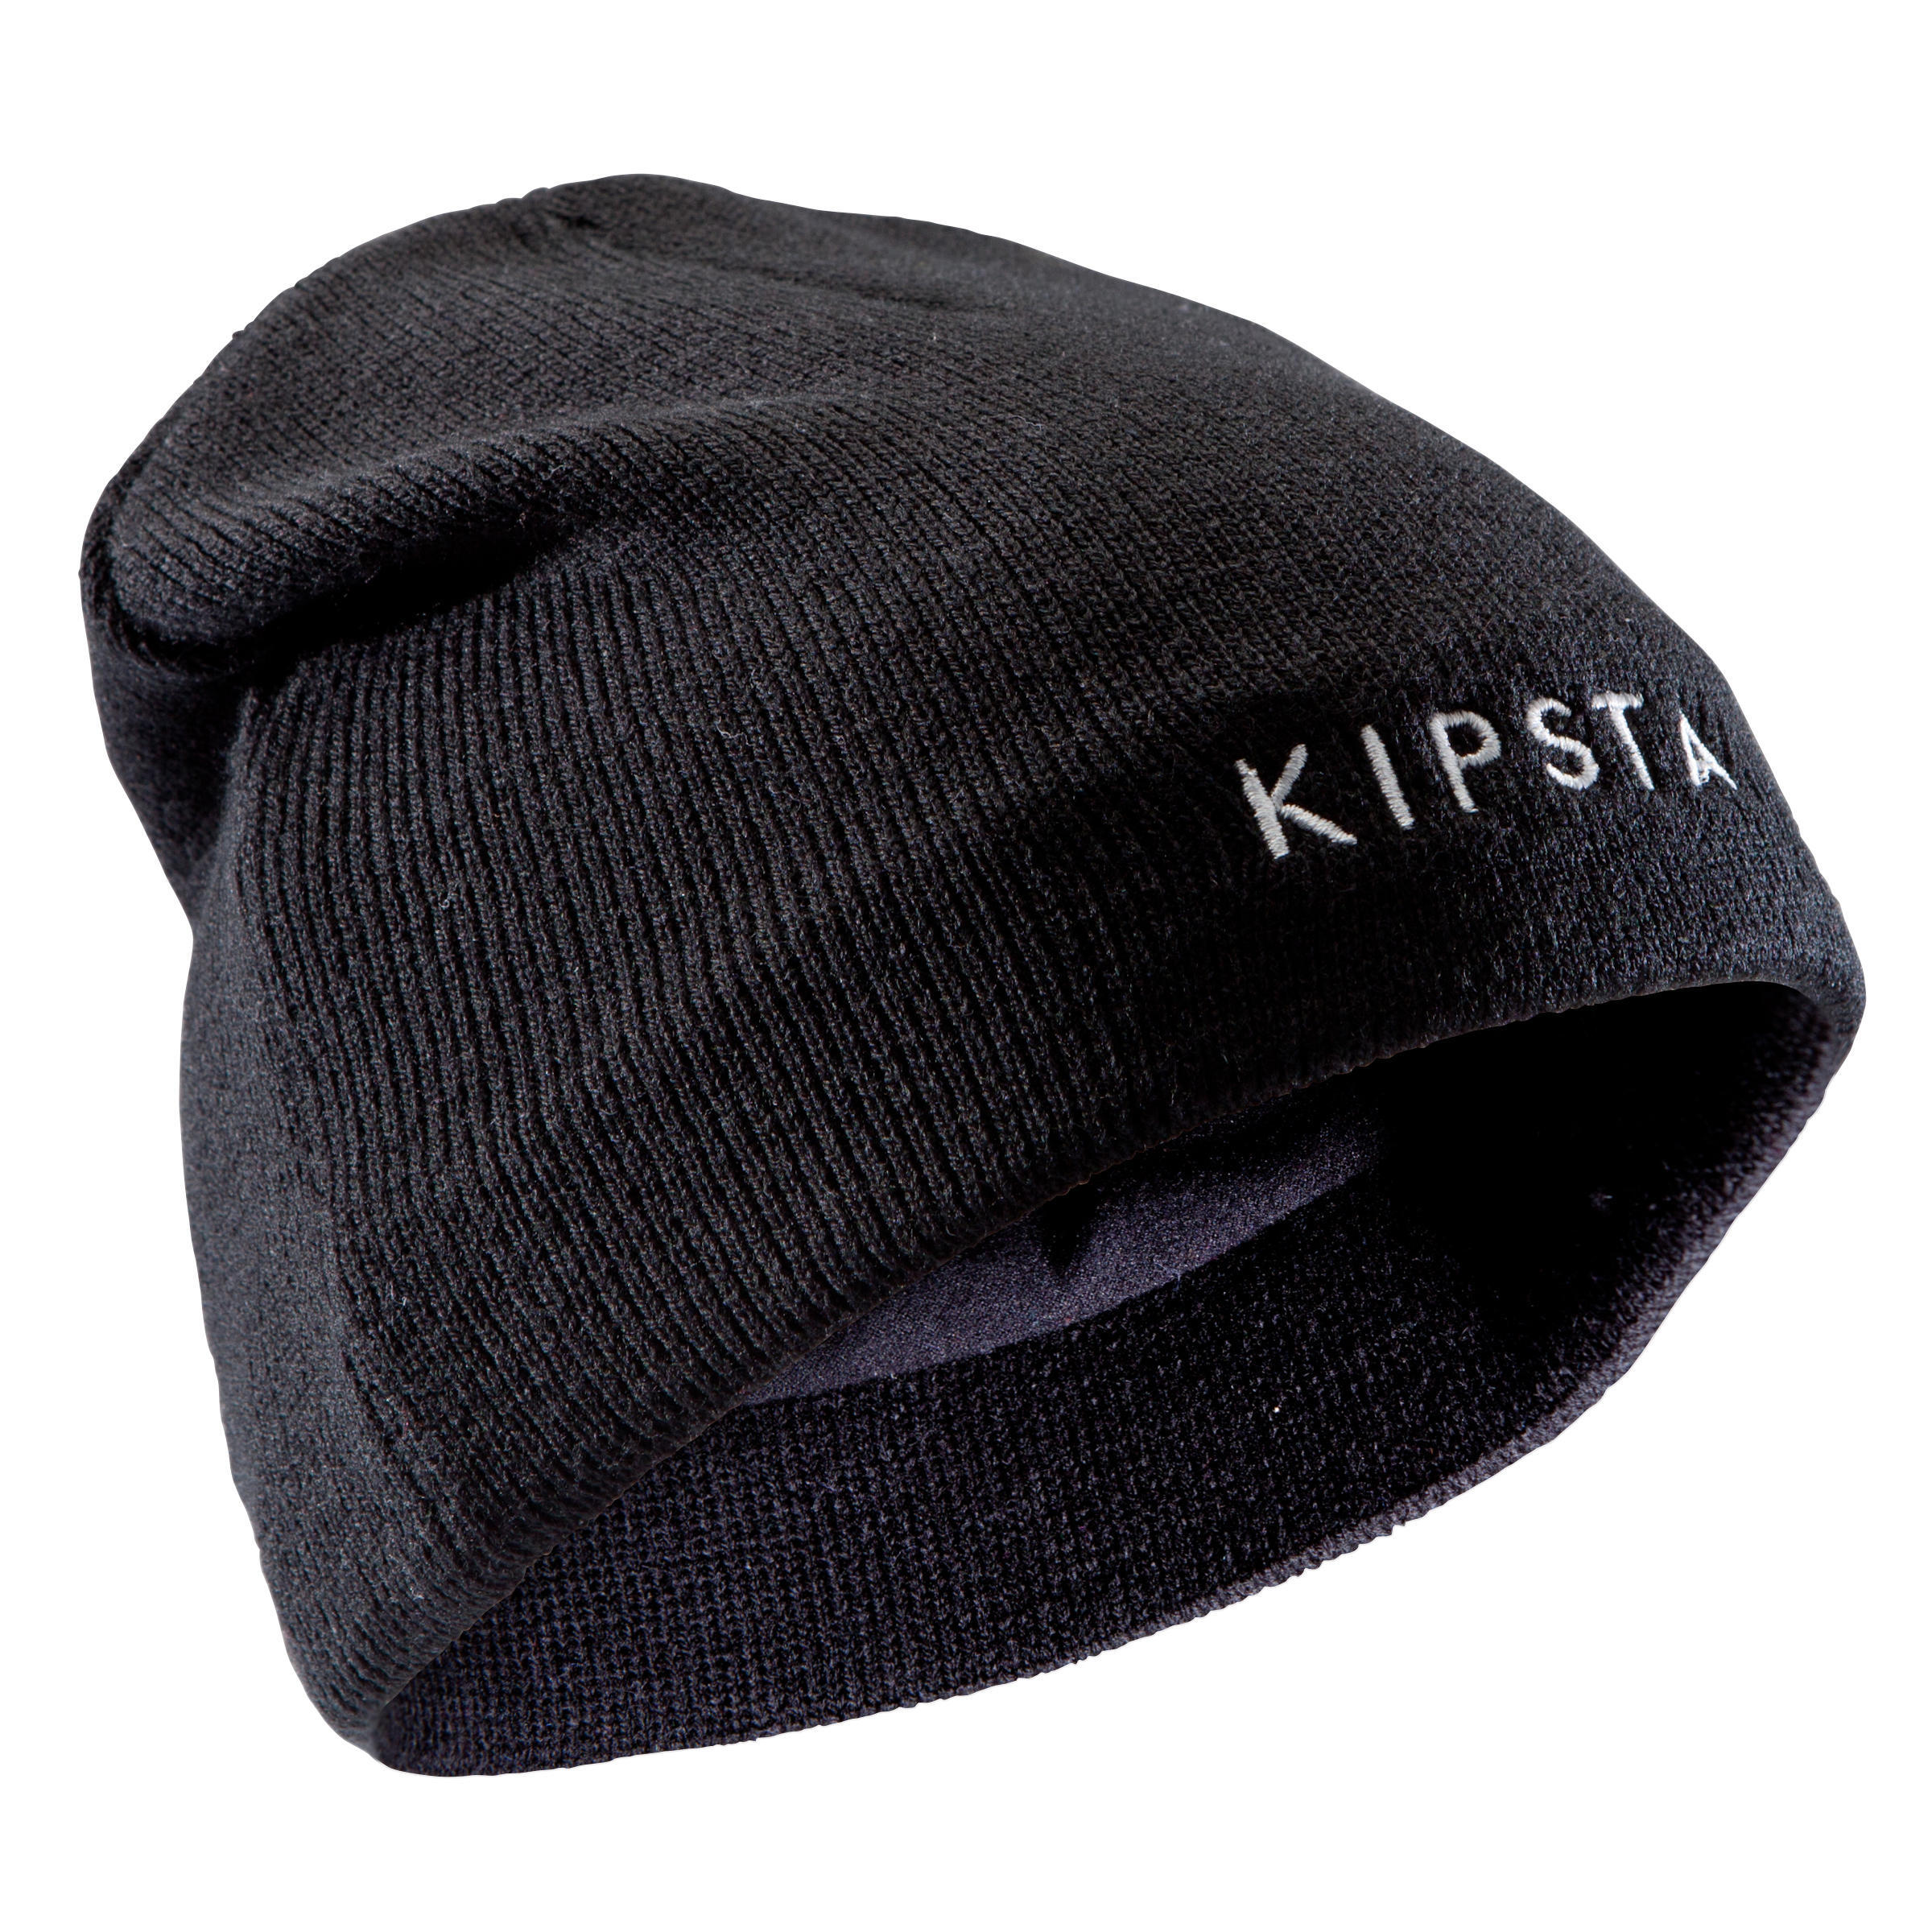 Согревающая шапка детская черная KIPSTA, черный